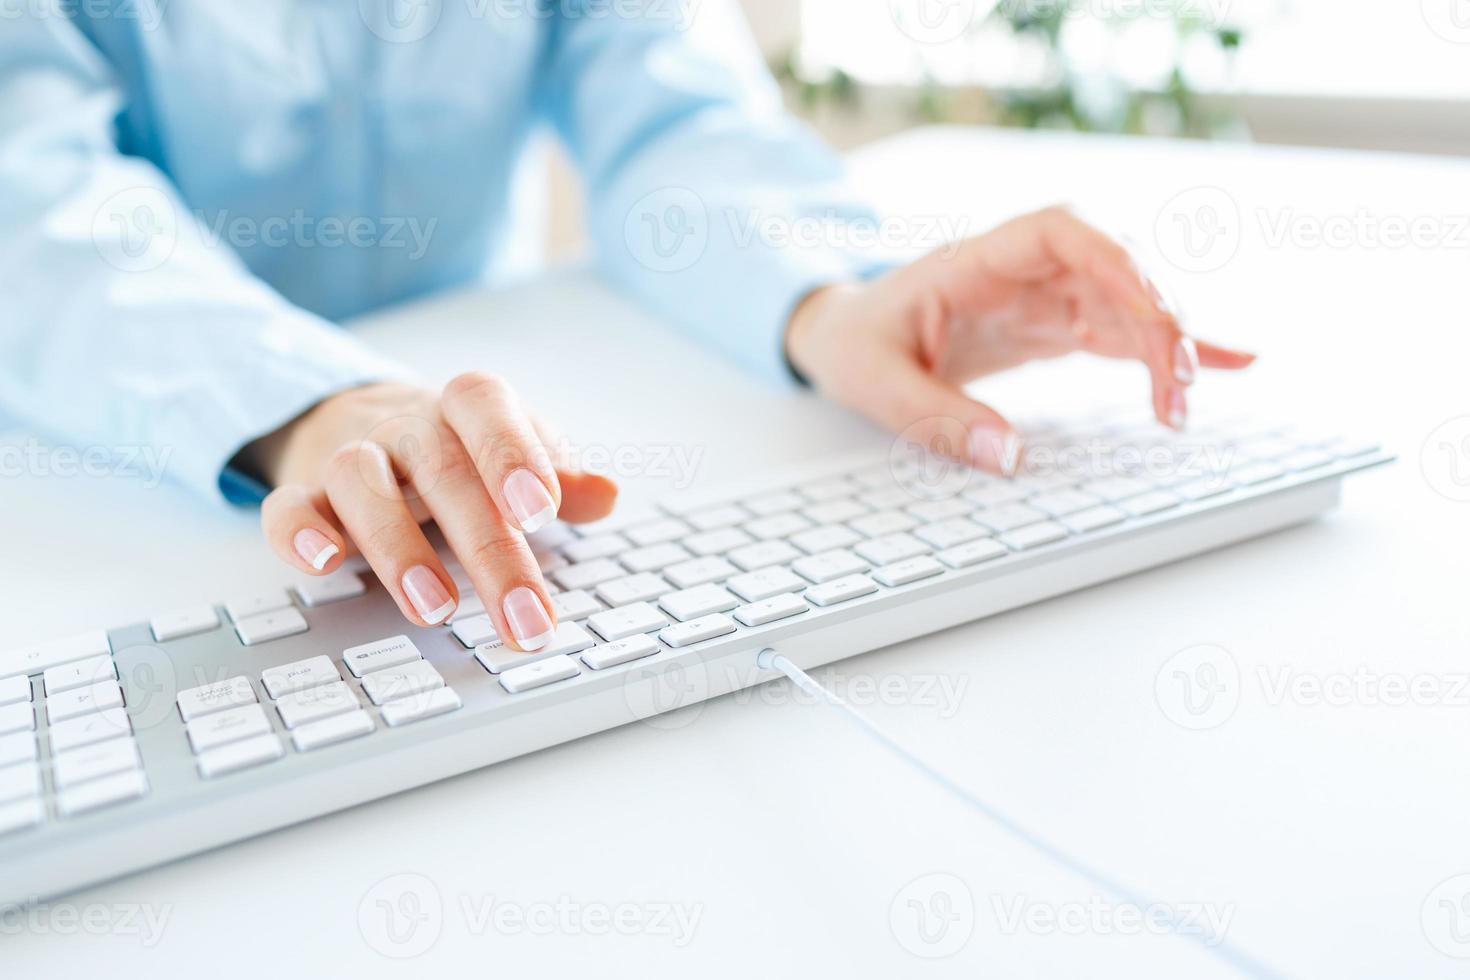 mujer oficina trabajador mecanografía en el teclado foto